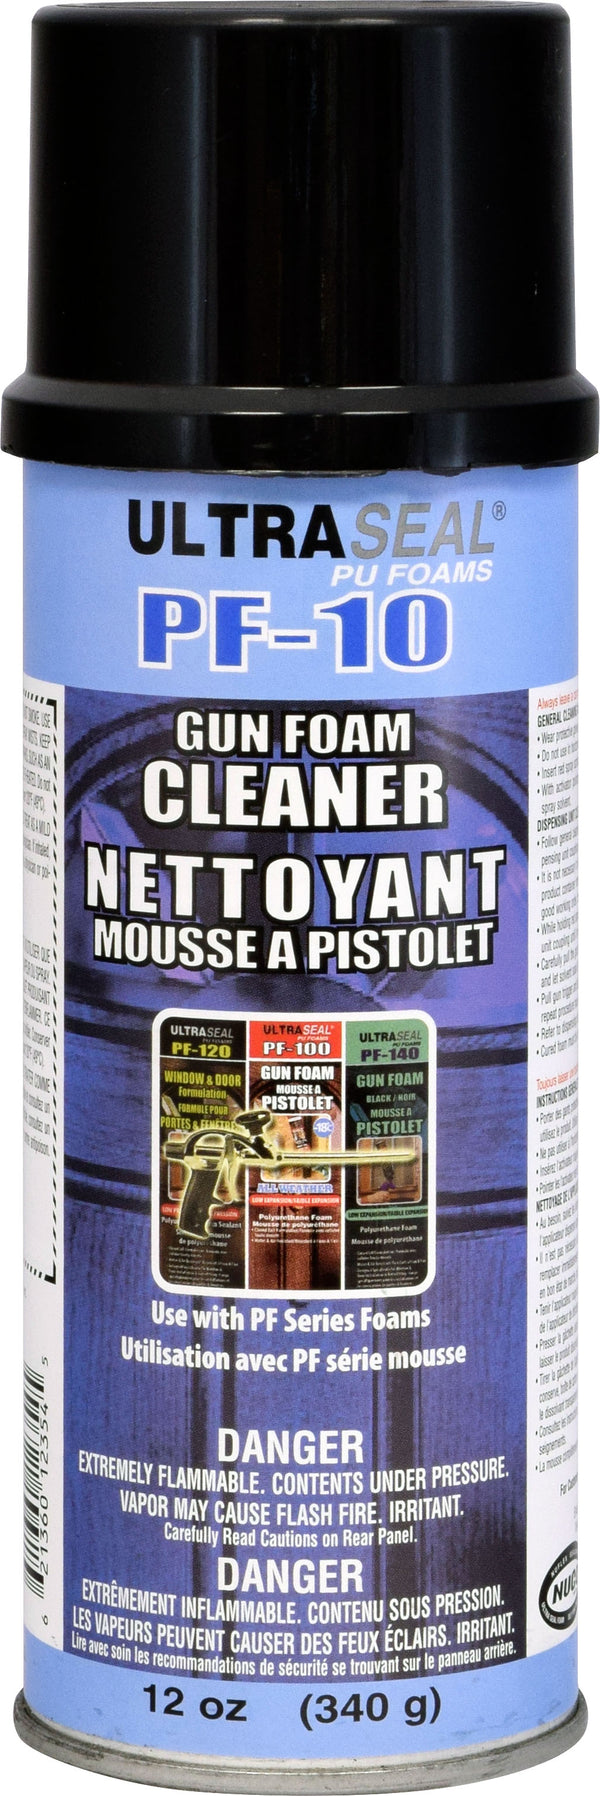 ULTRASEAL PF-10 FOAM GUN CLEANER (340 g)